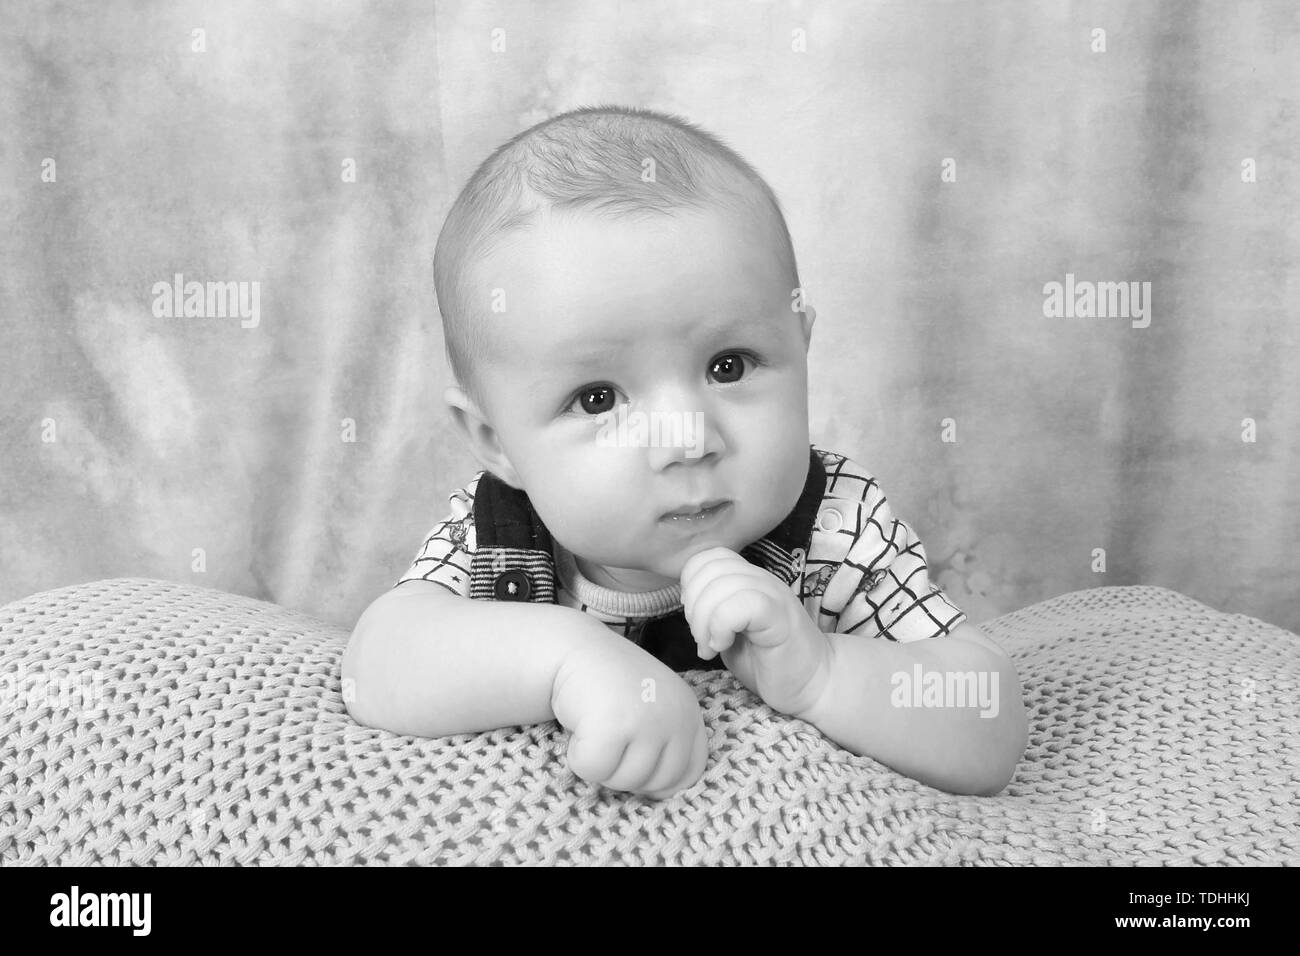 3 mes de edad Baby Boy relajante Foto de stock